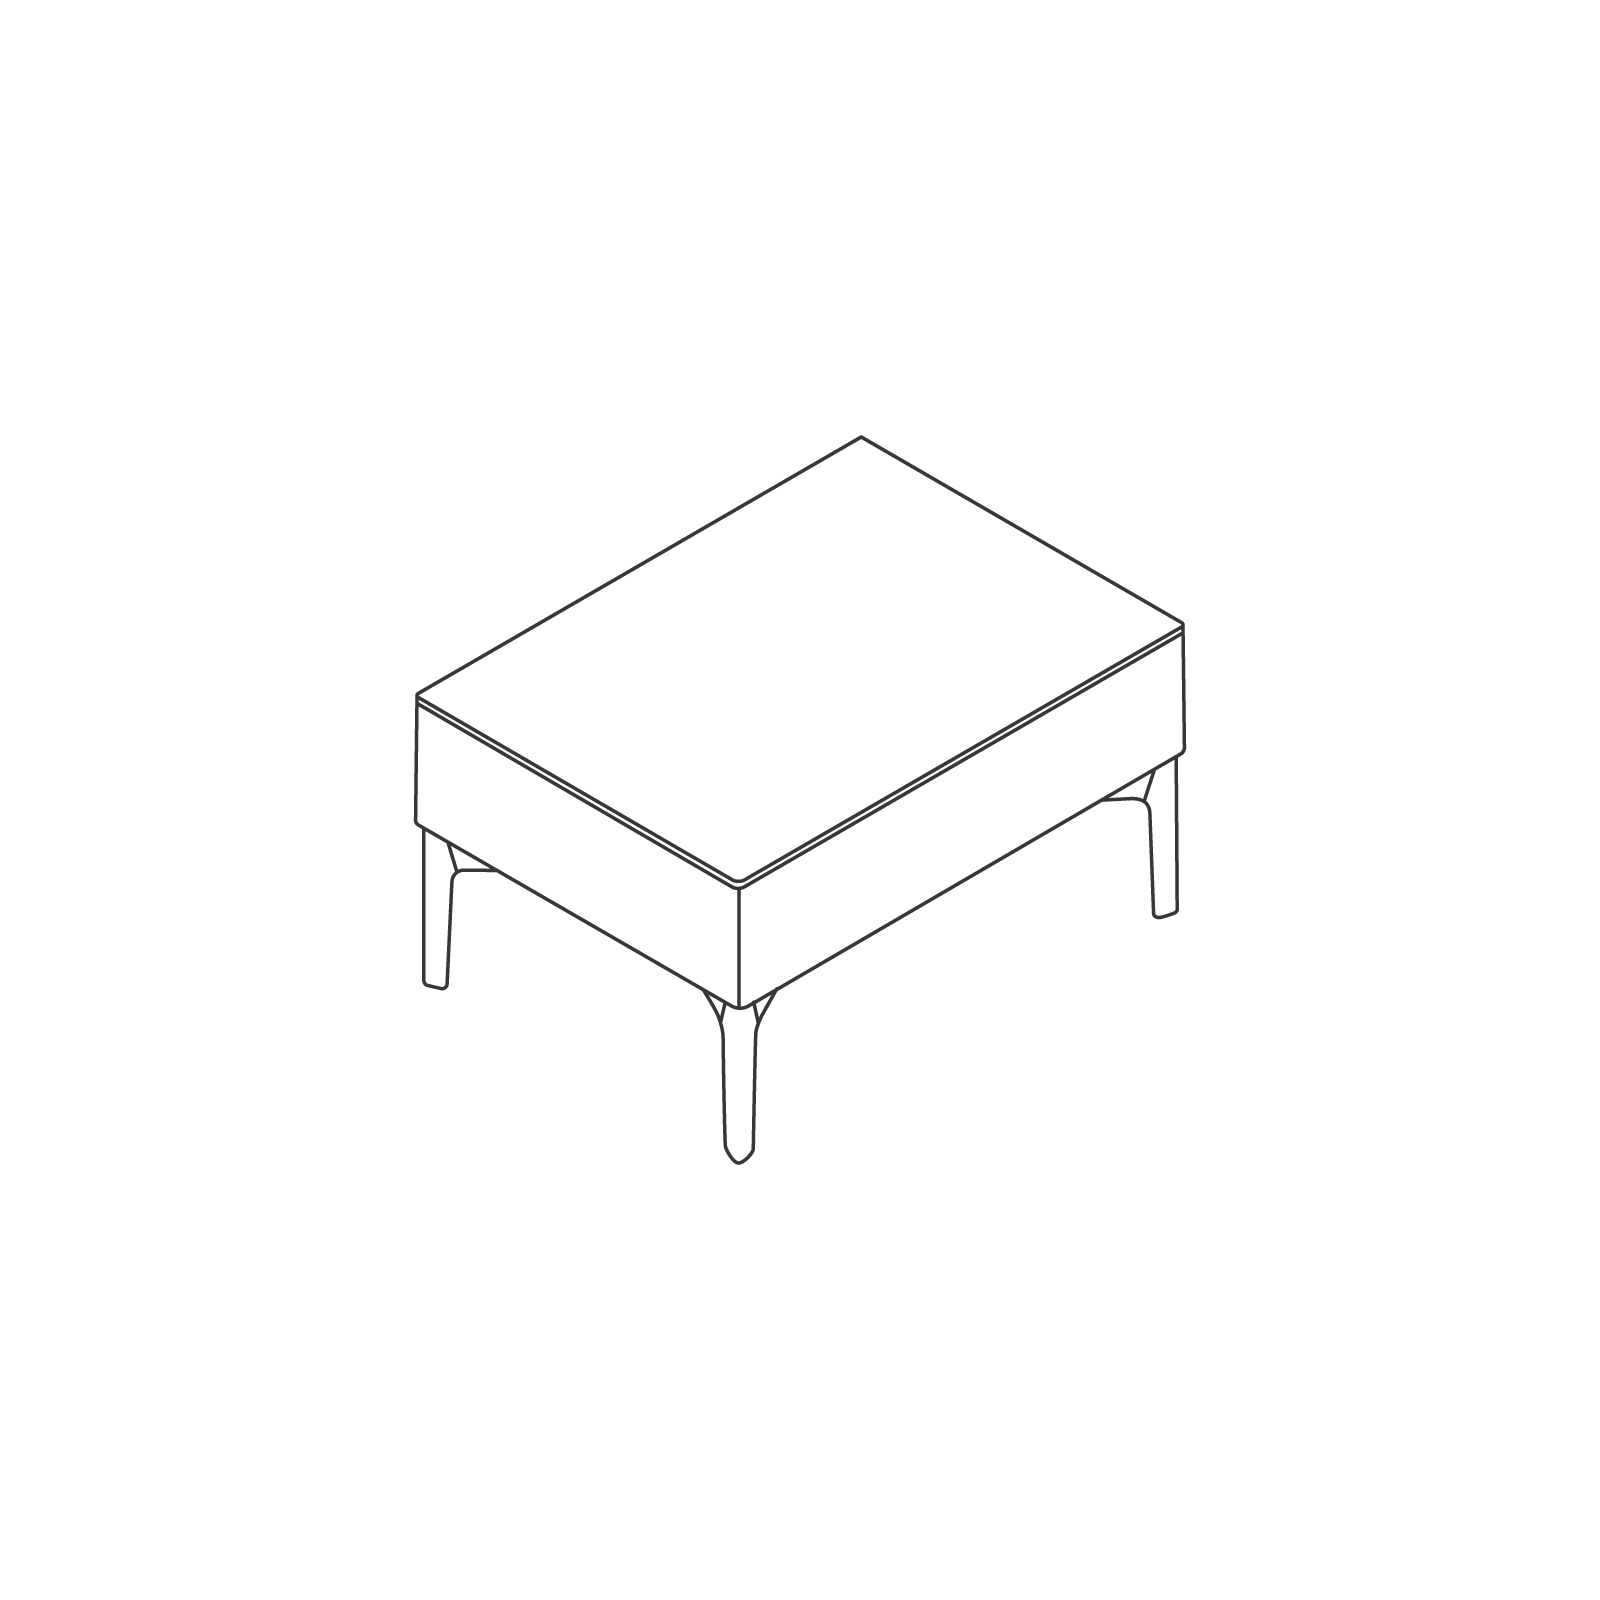 ラインドローイング - シンボルモジュラーシーティング - テーブル